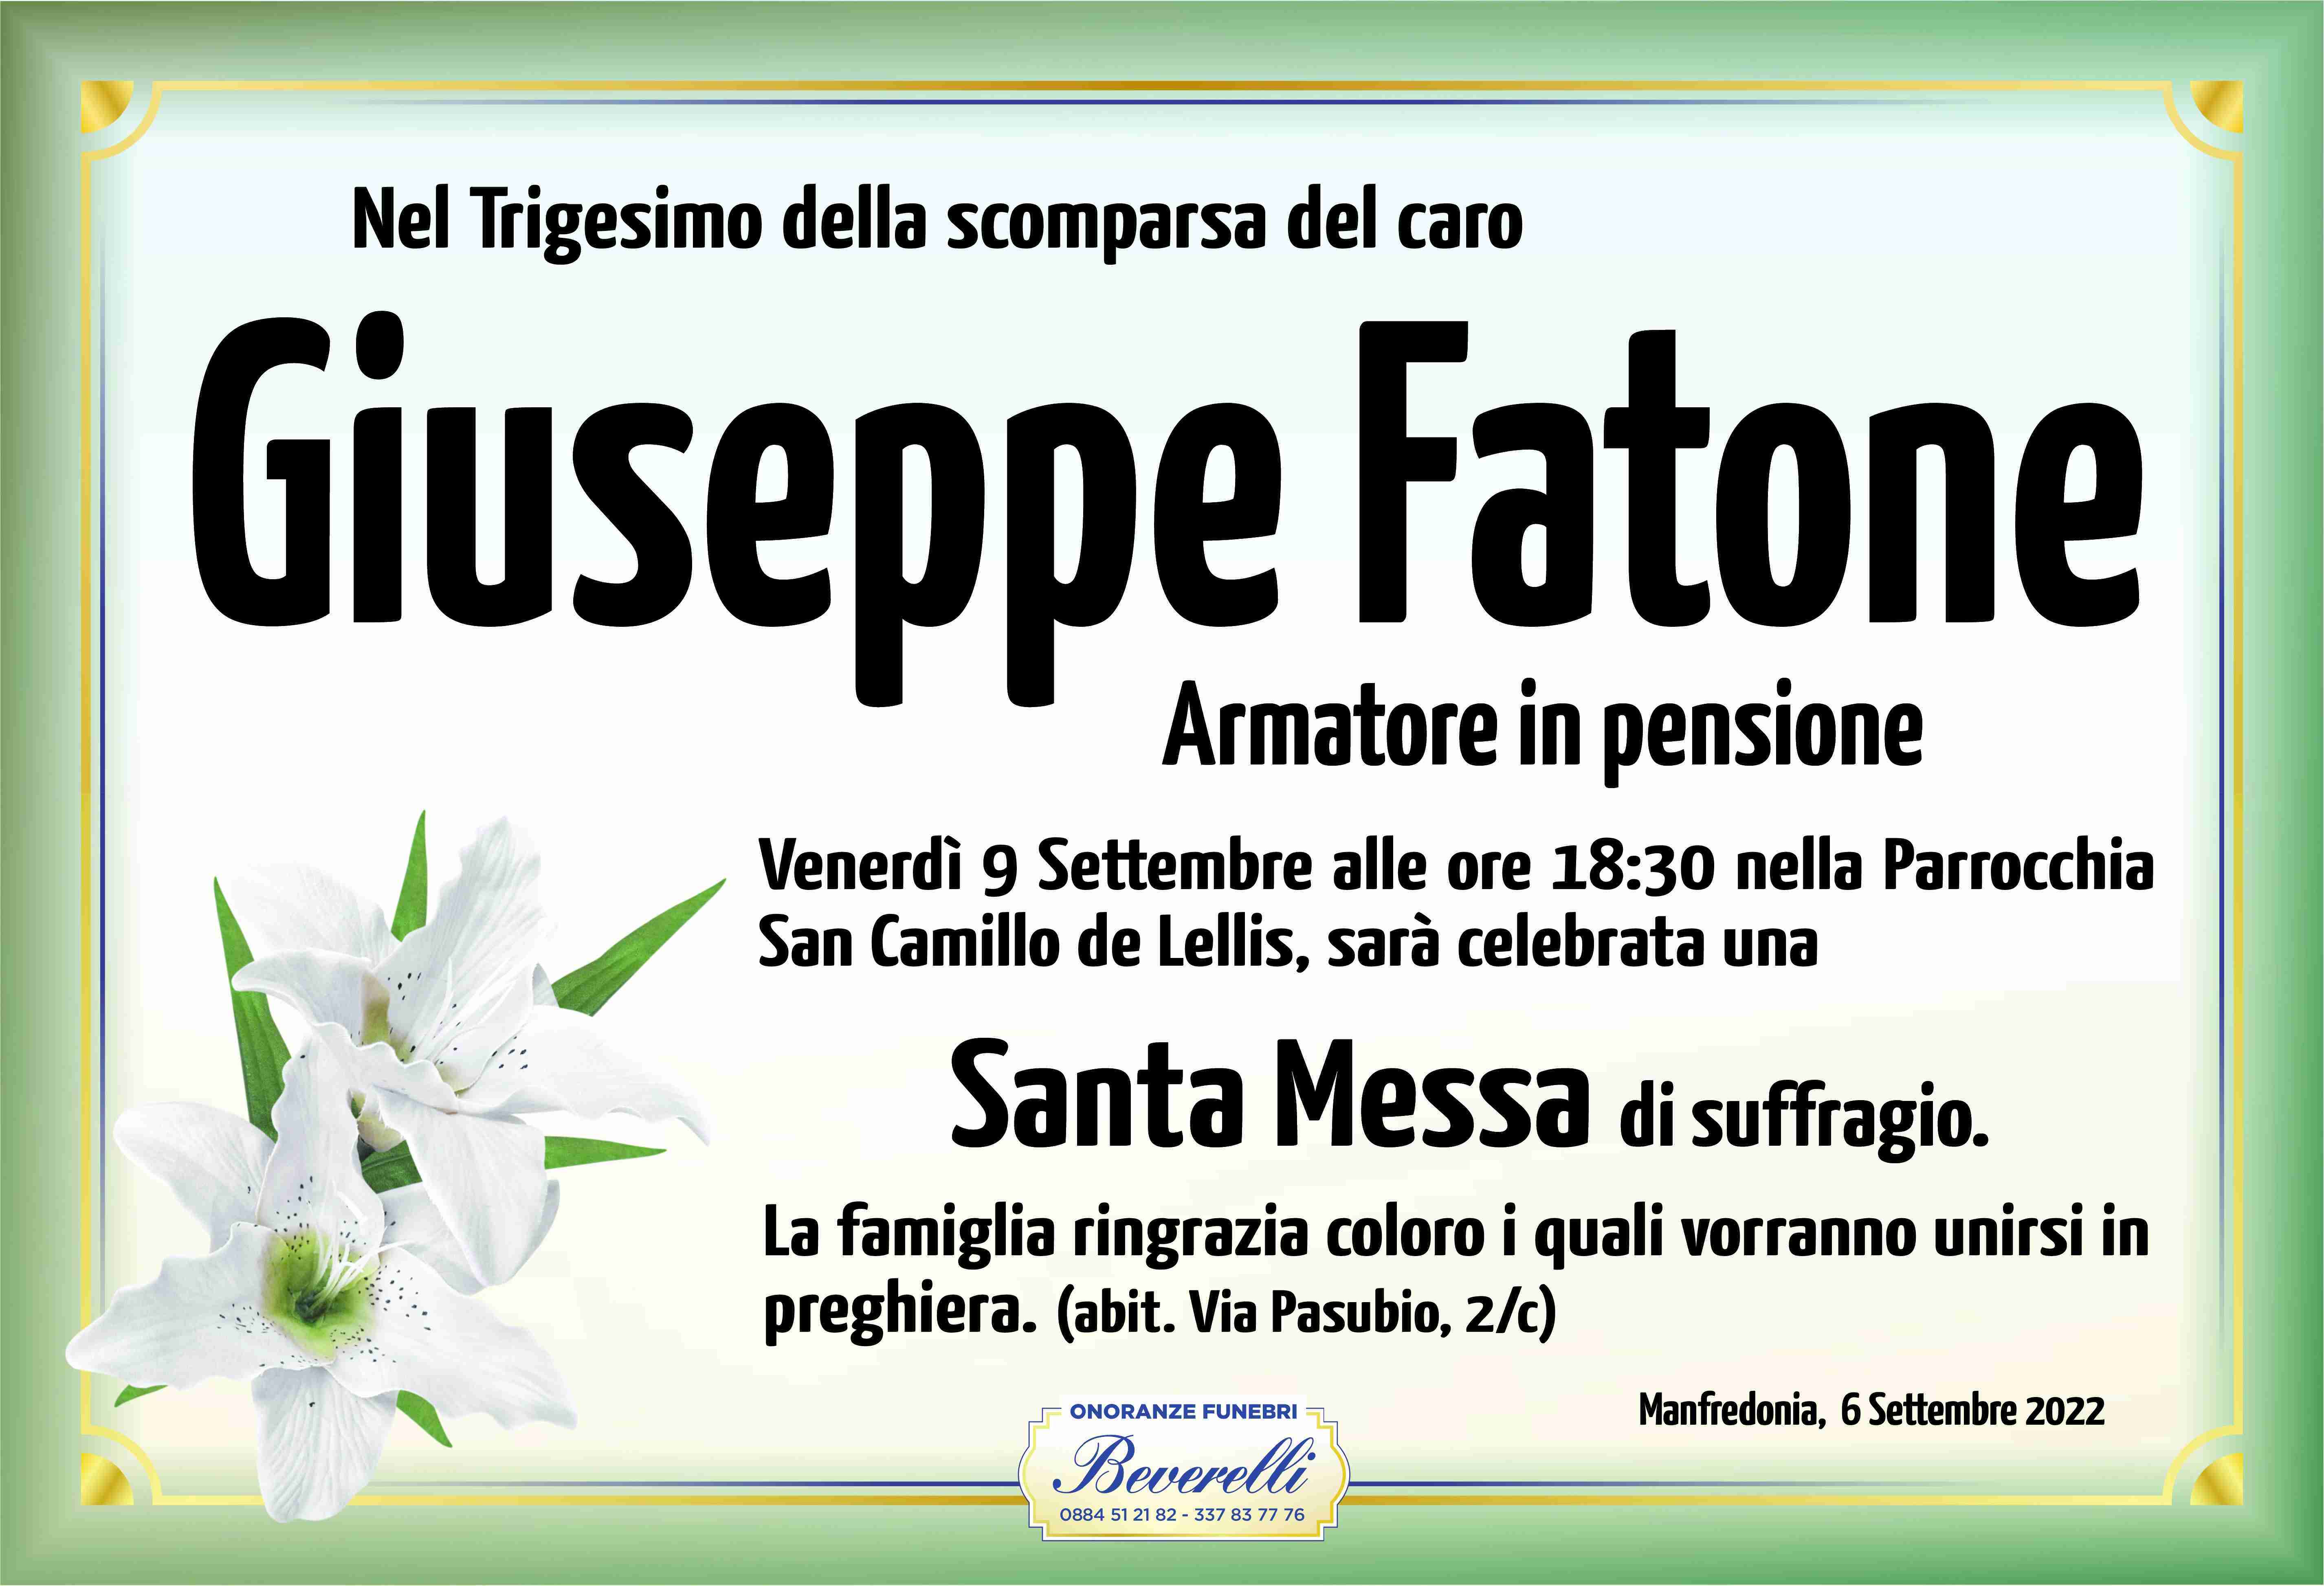 Giuseppe Fatone